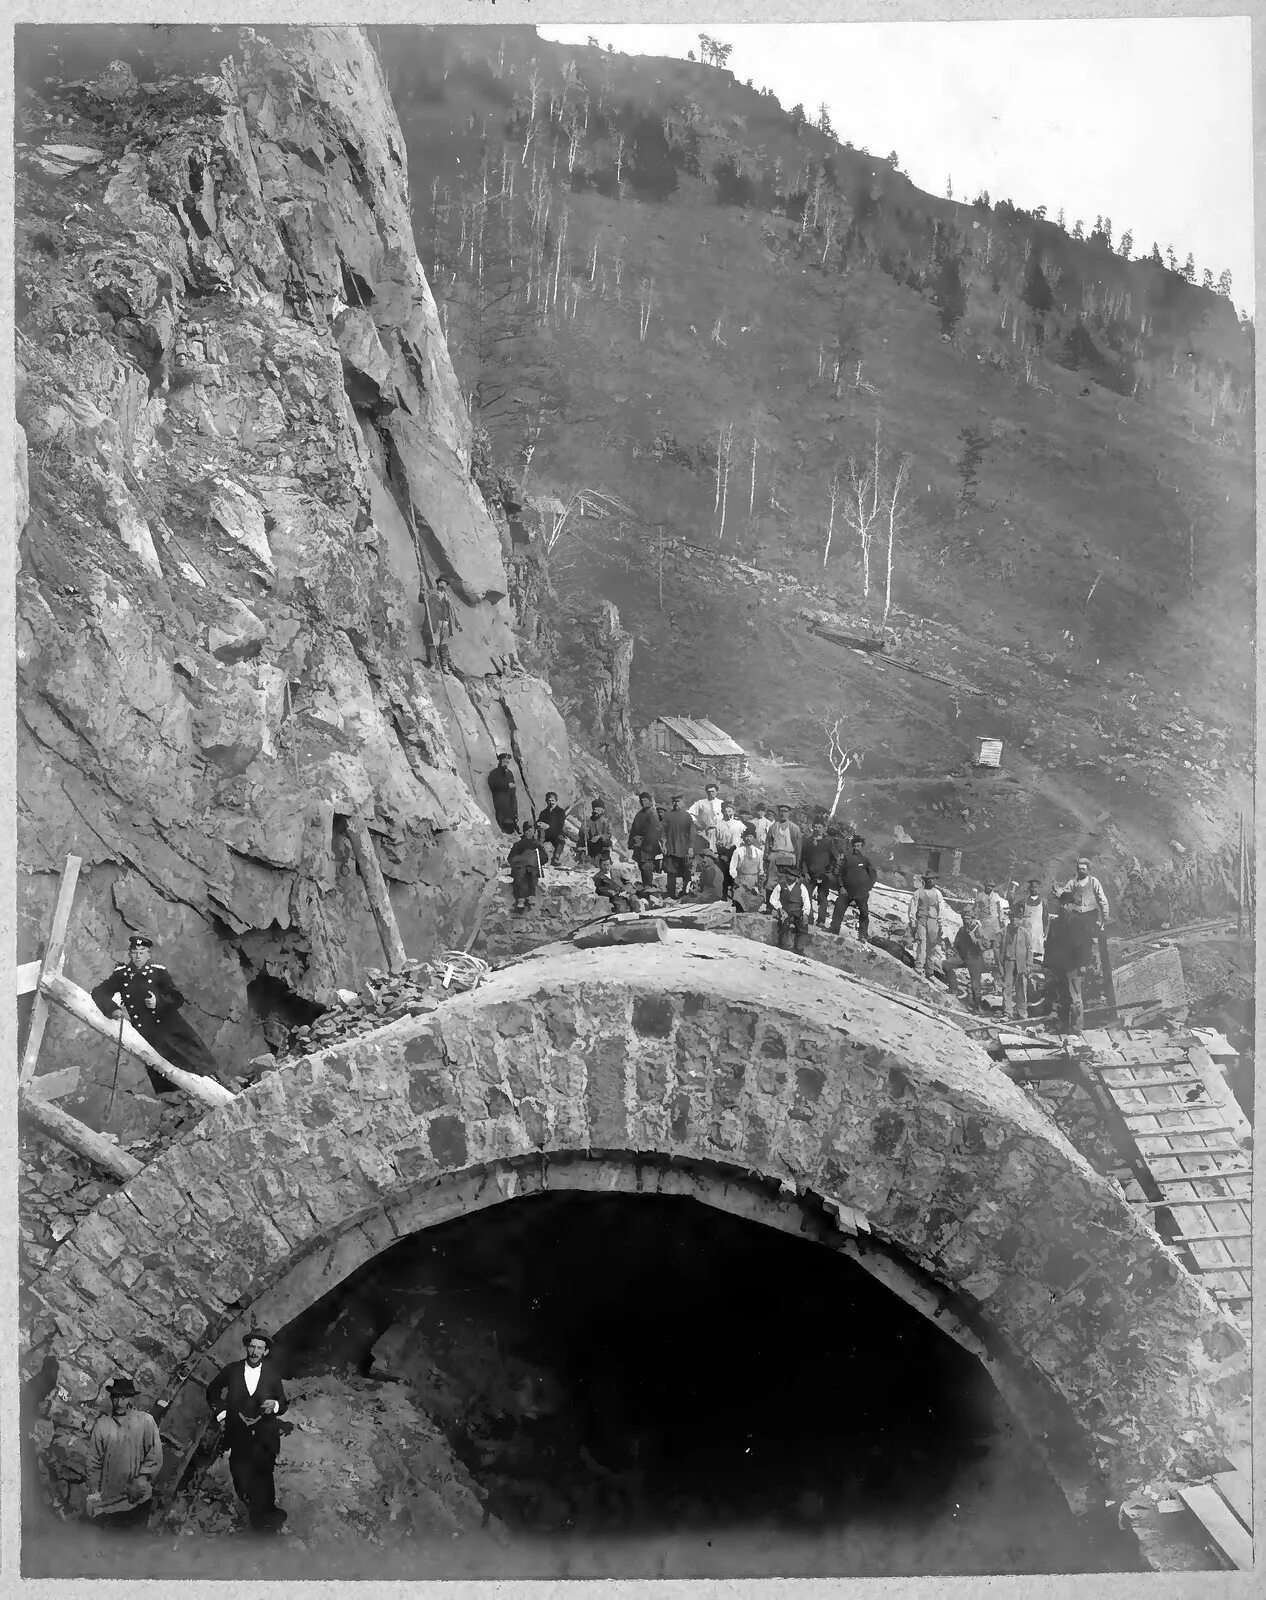 Кругобайкальская железная дорога тоннели. Кругобайкальская железная дорога 1900. Кругобайкальская дорога (1899—1905). Транссибирскую магистраль откапывали.